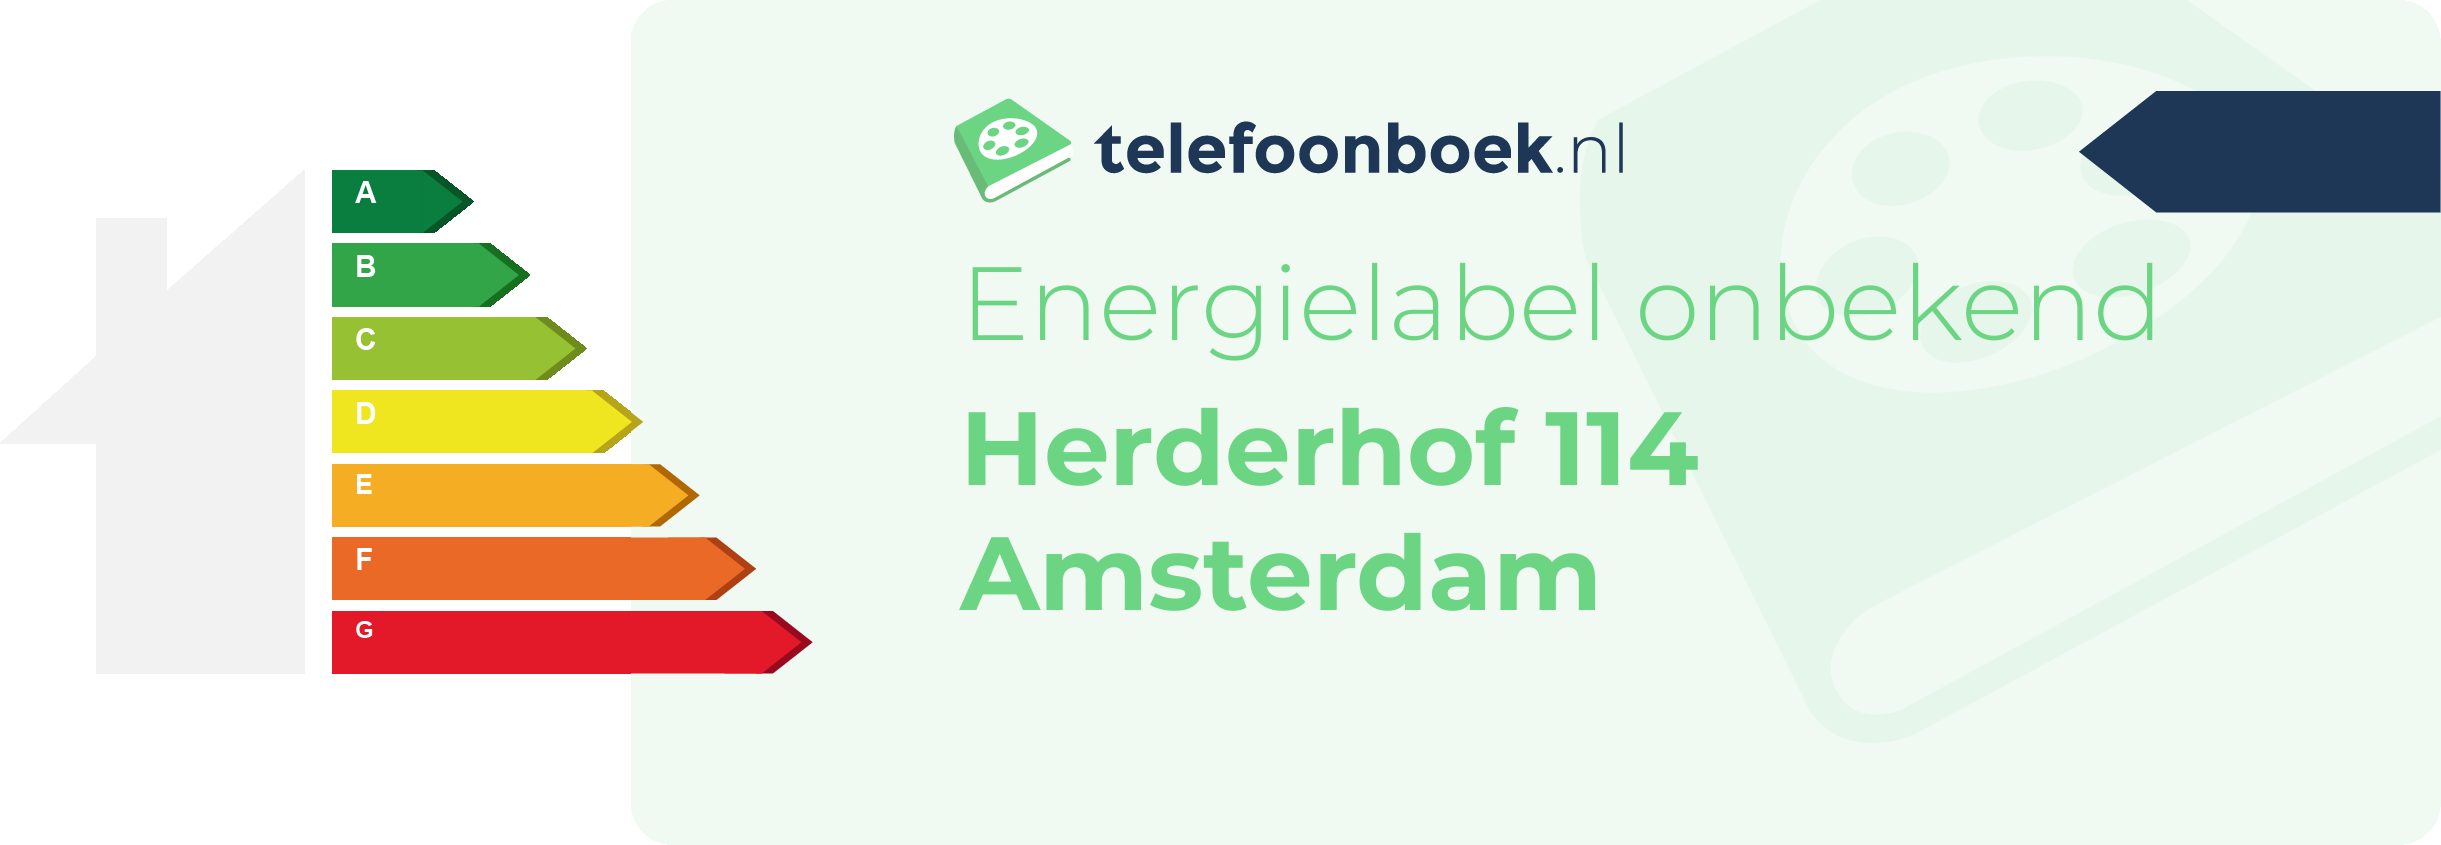 Energielabel Herderhof 114 Amsterdam